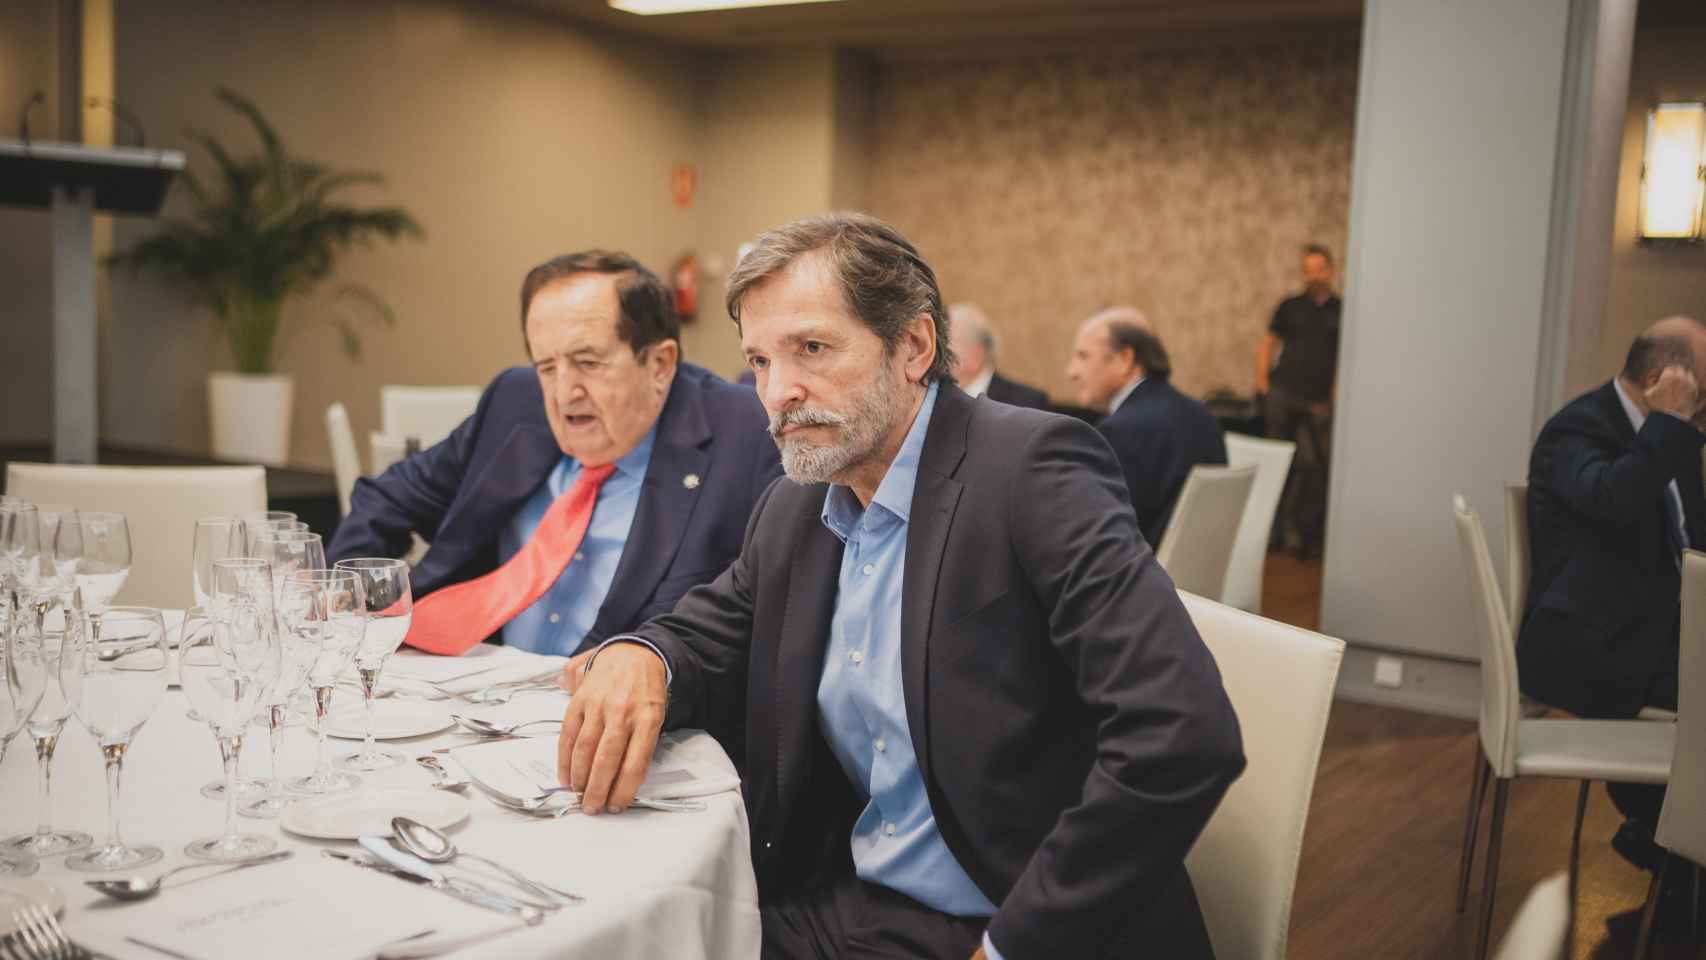 Javier Fernández, ex presidente de Asturias y de la Gestora del PSOE, junto a Juan José Lucas, expresidente de Castilla y León (PP).